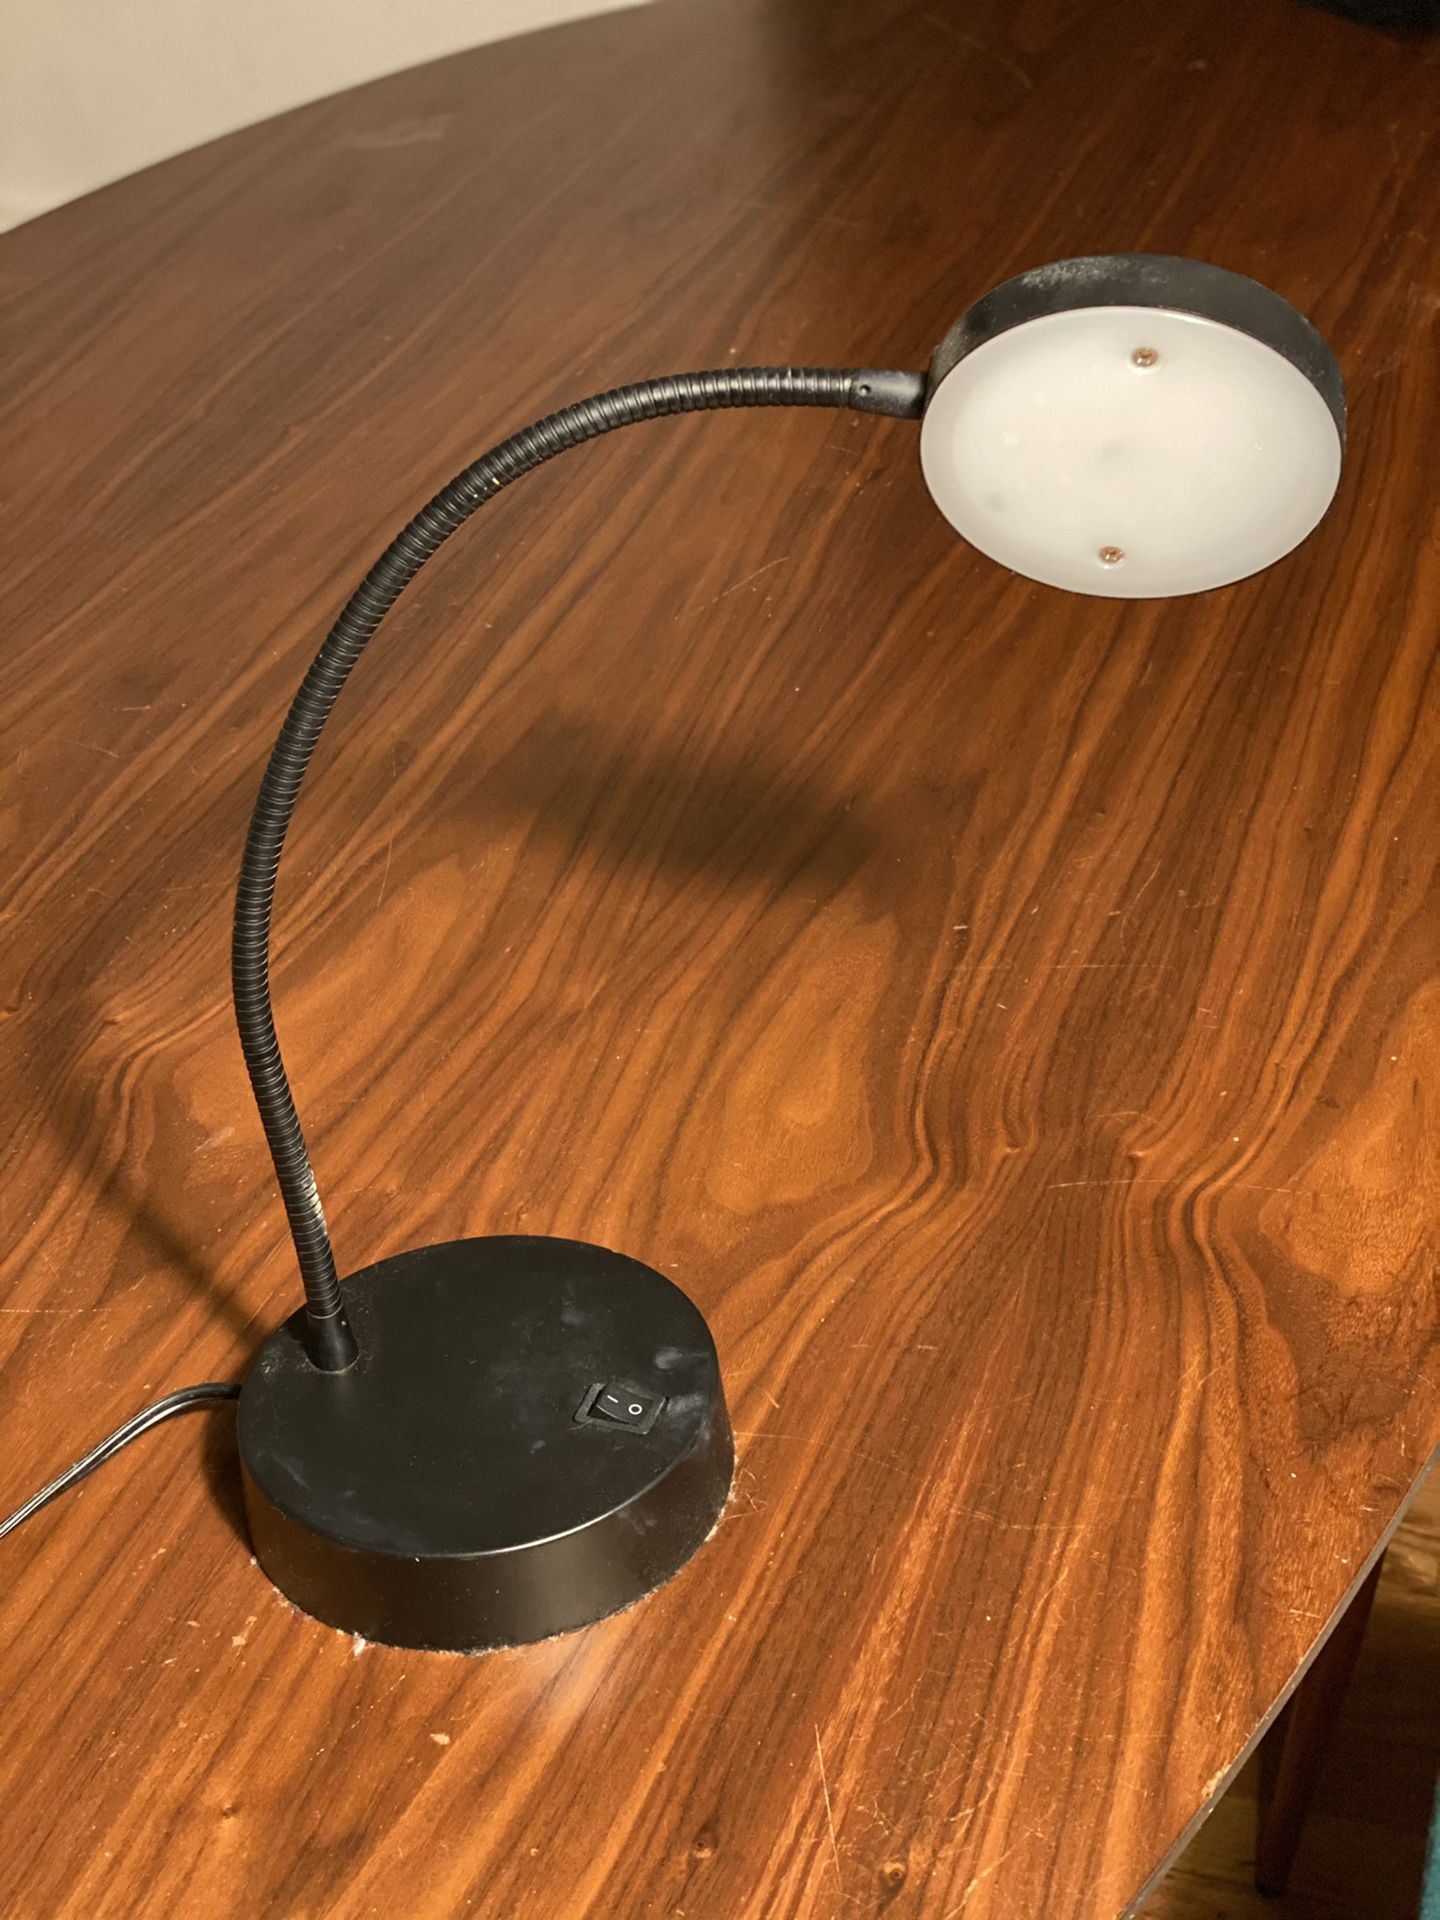 Led Desk lamp